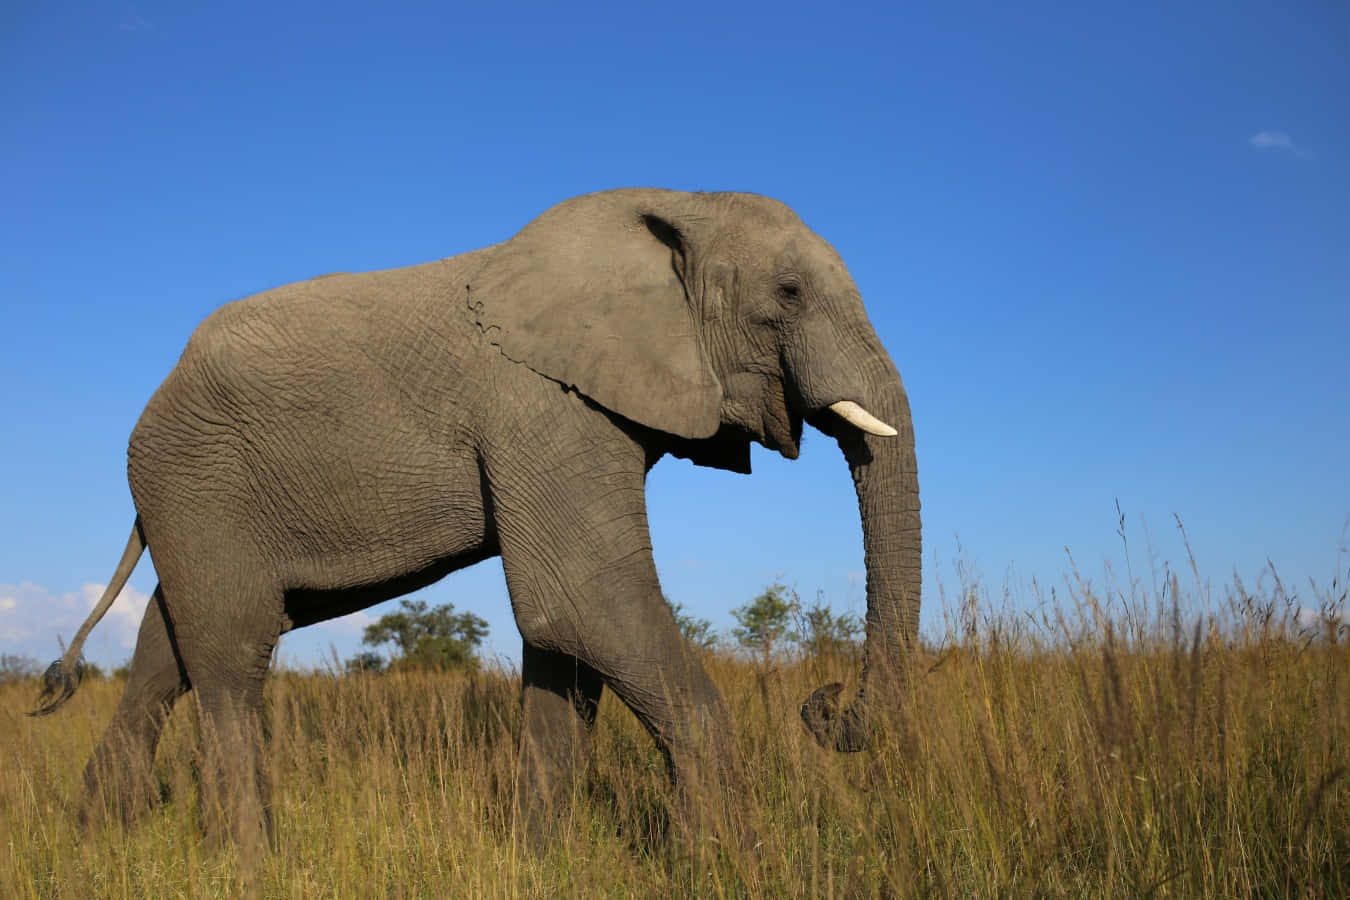 A majestic elephant enjoying the nature